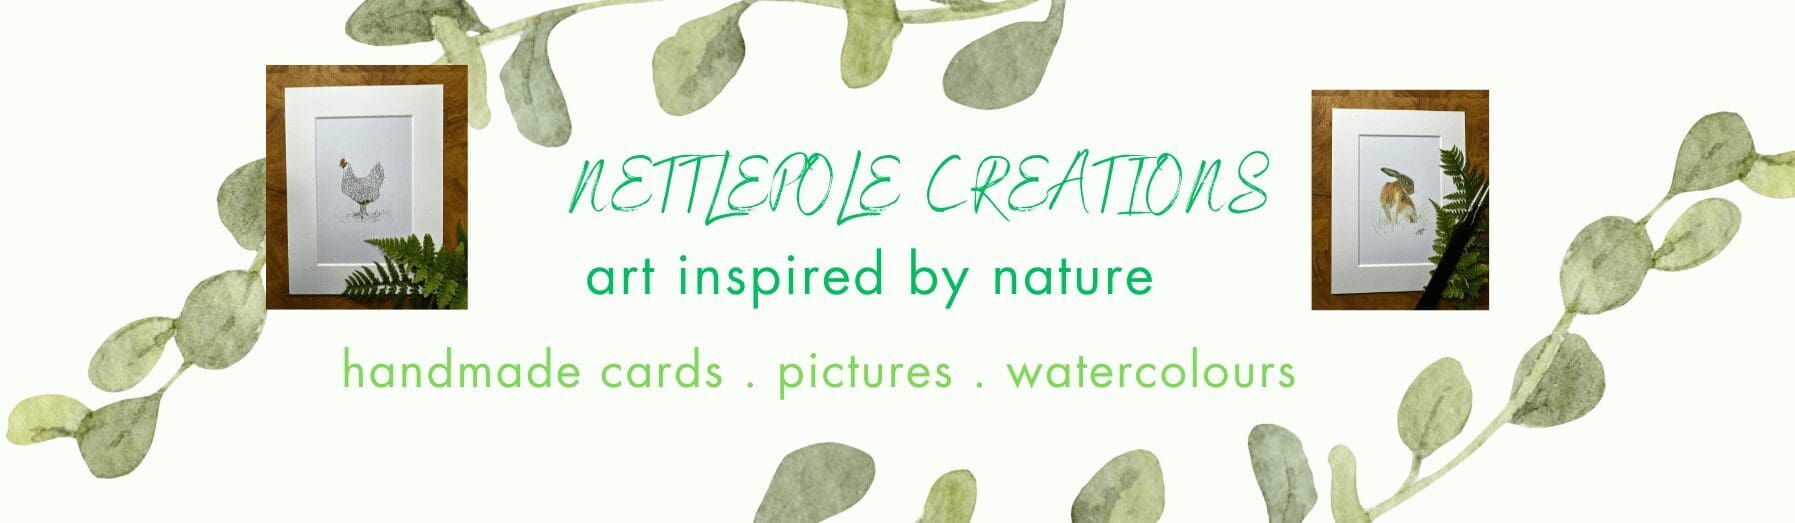 Nettlepole Creations